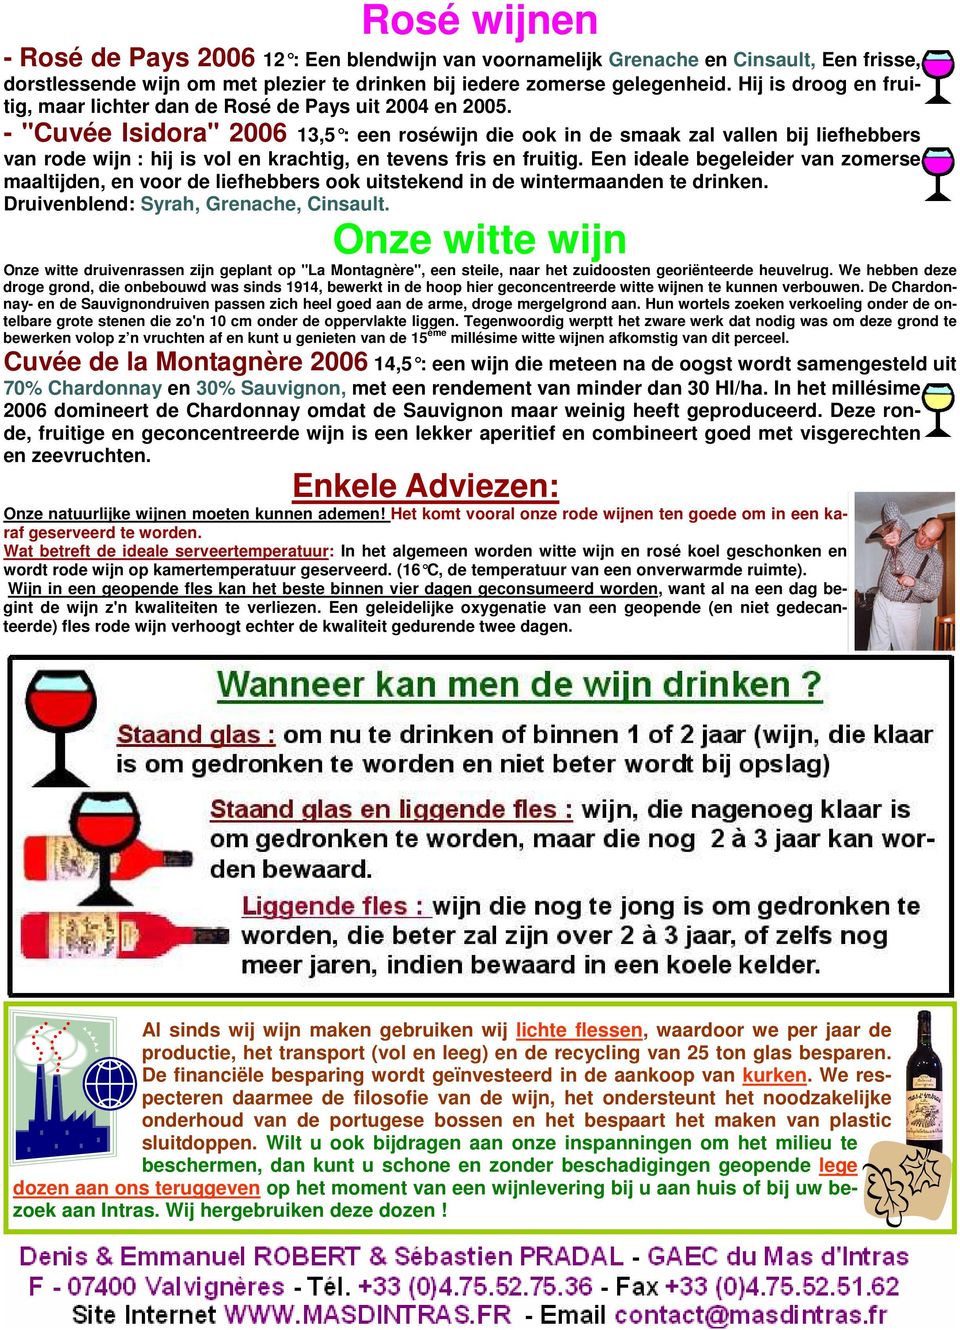 - "Cuvée Isidora" 2006 13,5 : een roséwijn die ook in de smaak zal vallen bij liefhebbers van rode wijn : hij is vol en krachtig, en tevens fris en fruitig.